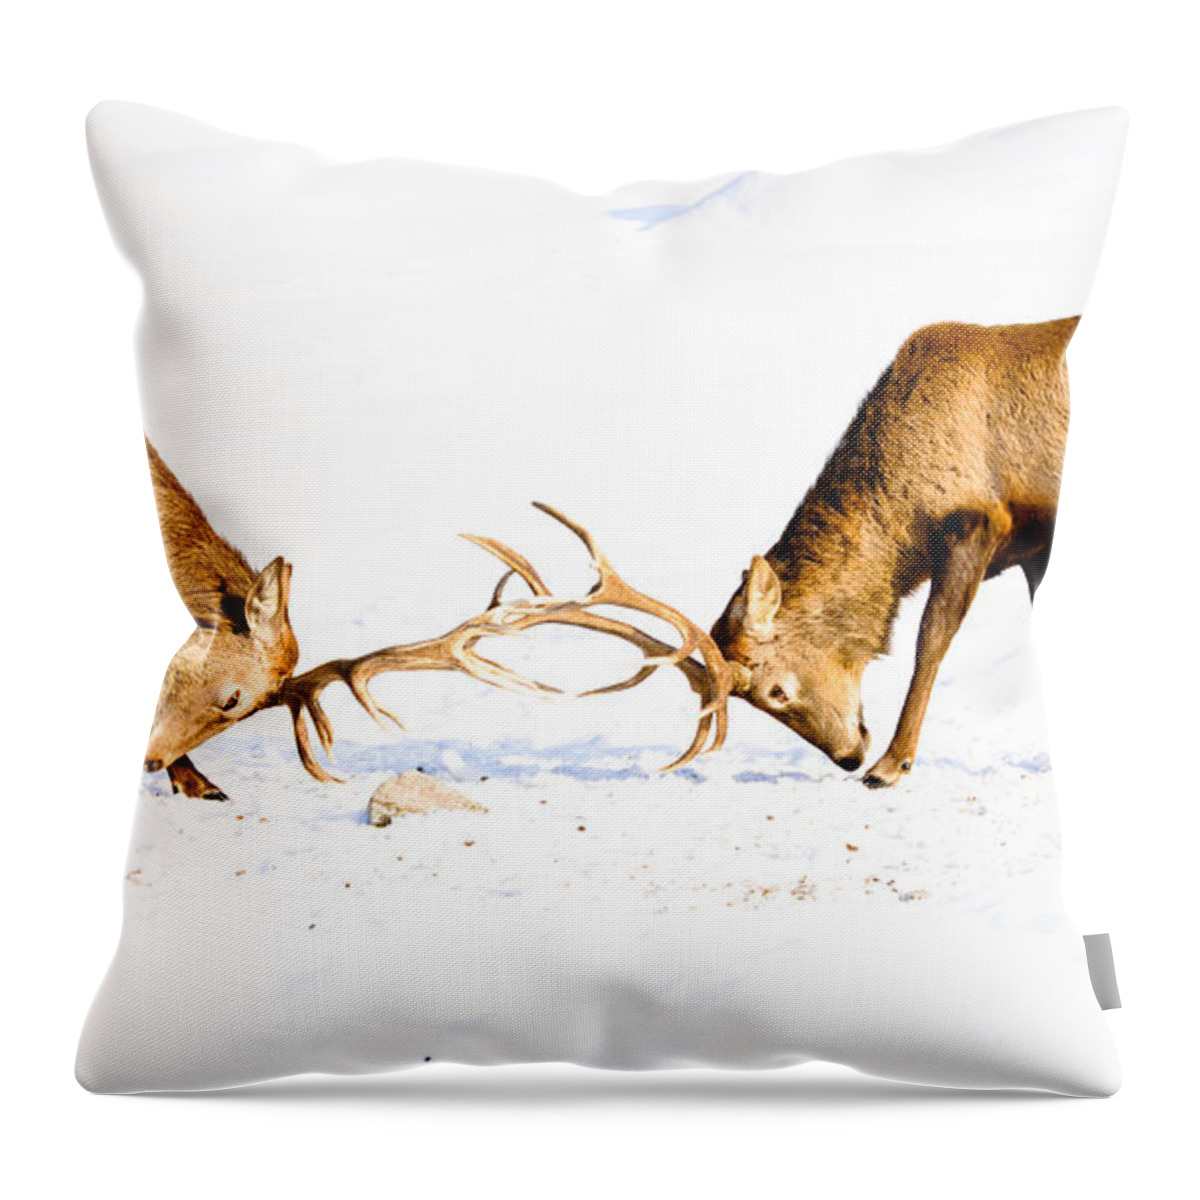 Wapiti Throw Pillow featuring the photograph Horns a Plenty by Cheryl Baxter